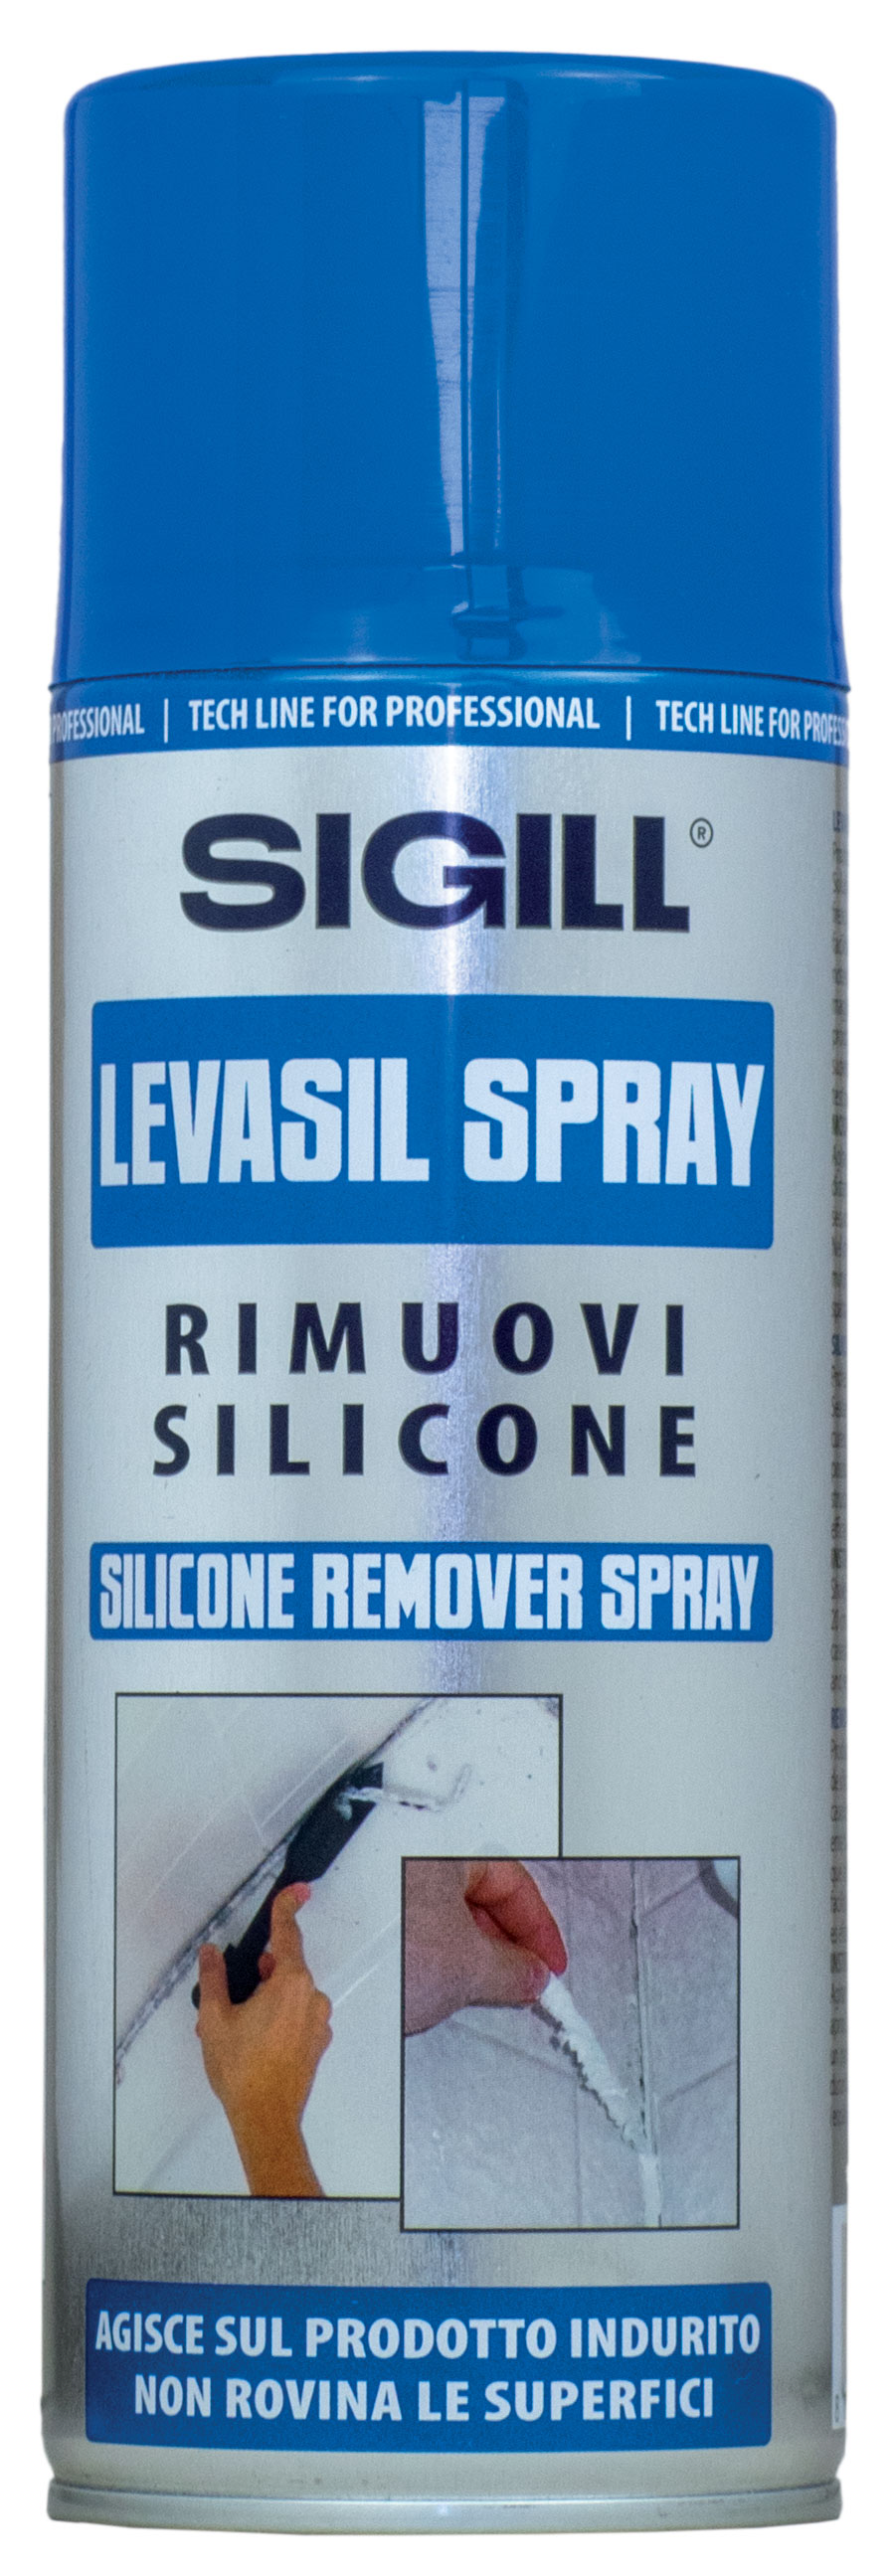 Levasil Spray - Rimuovi silicone - Sigill